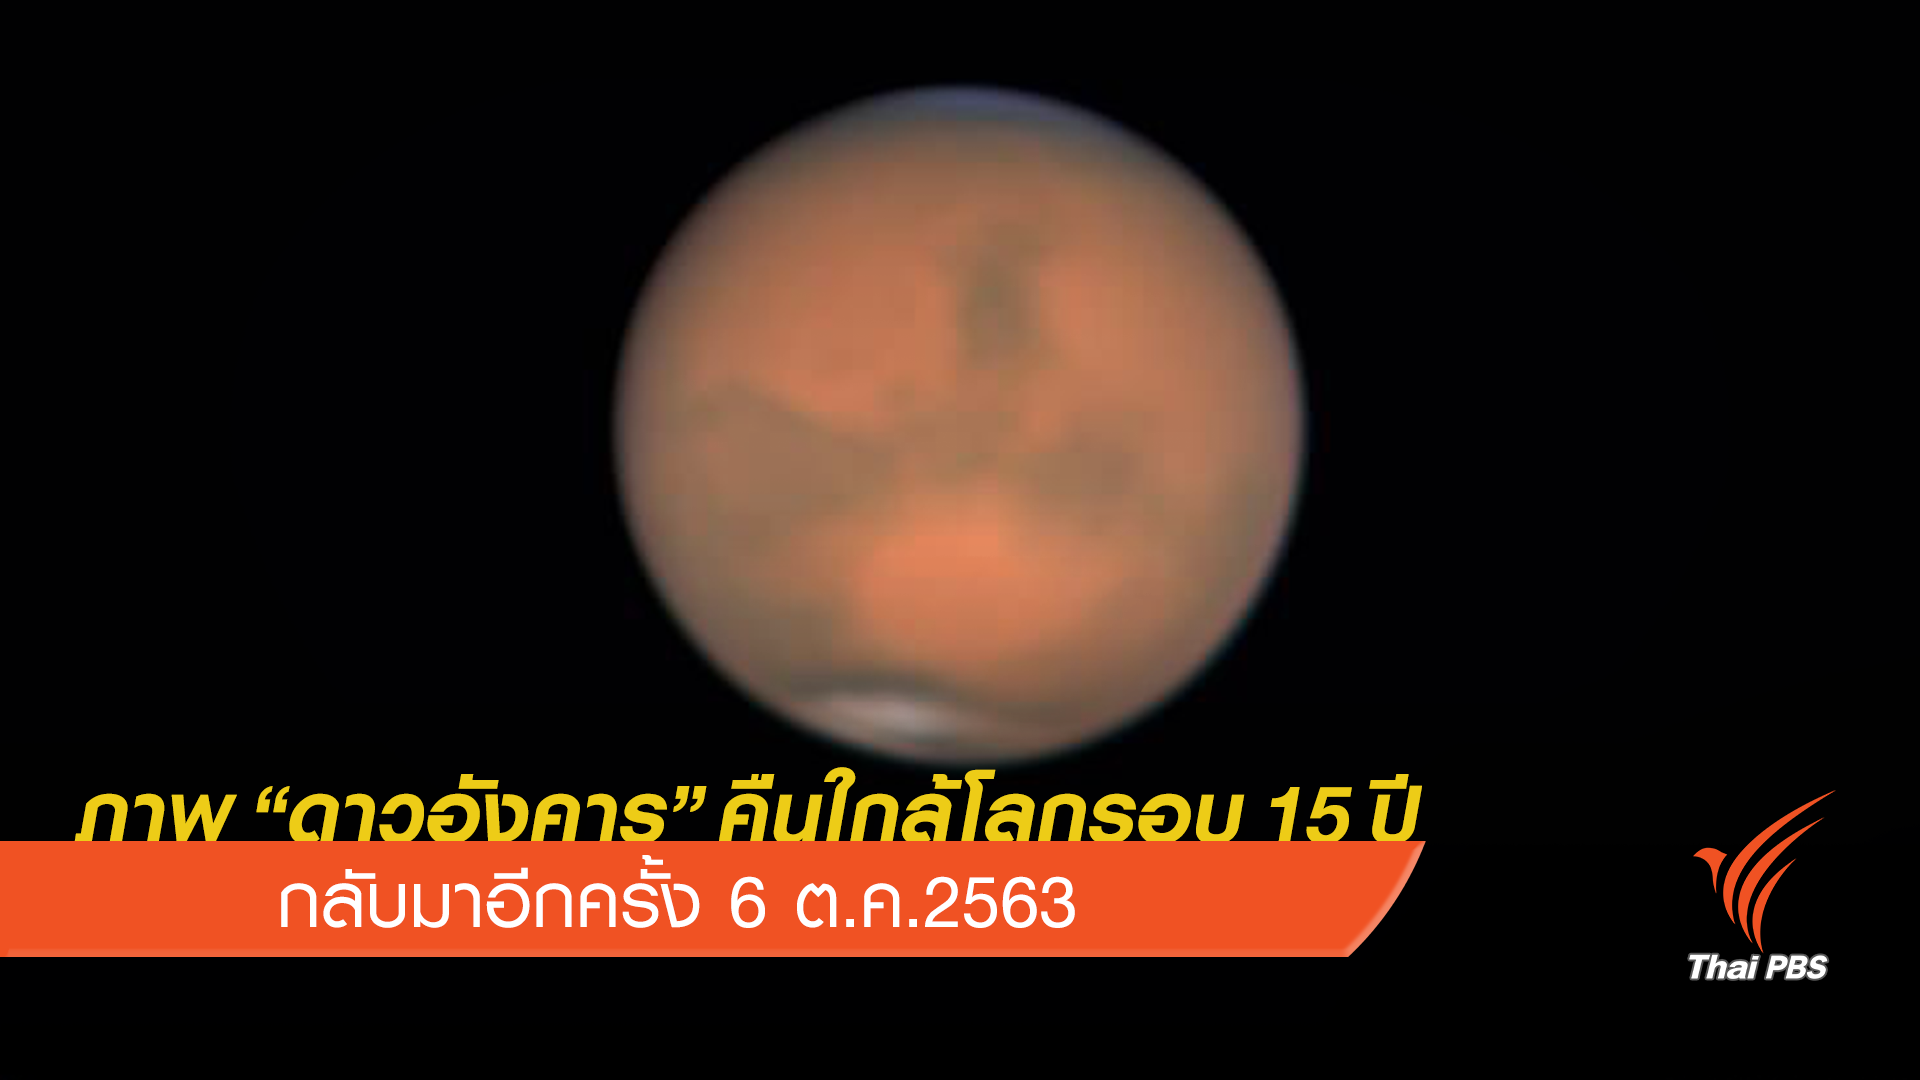 เปิดภาพ " ดาวอังคาร” คืนใกล้โลกที่สุดในรอบ 15 ปี